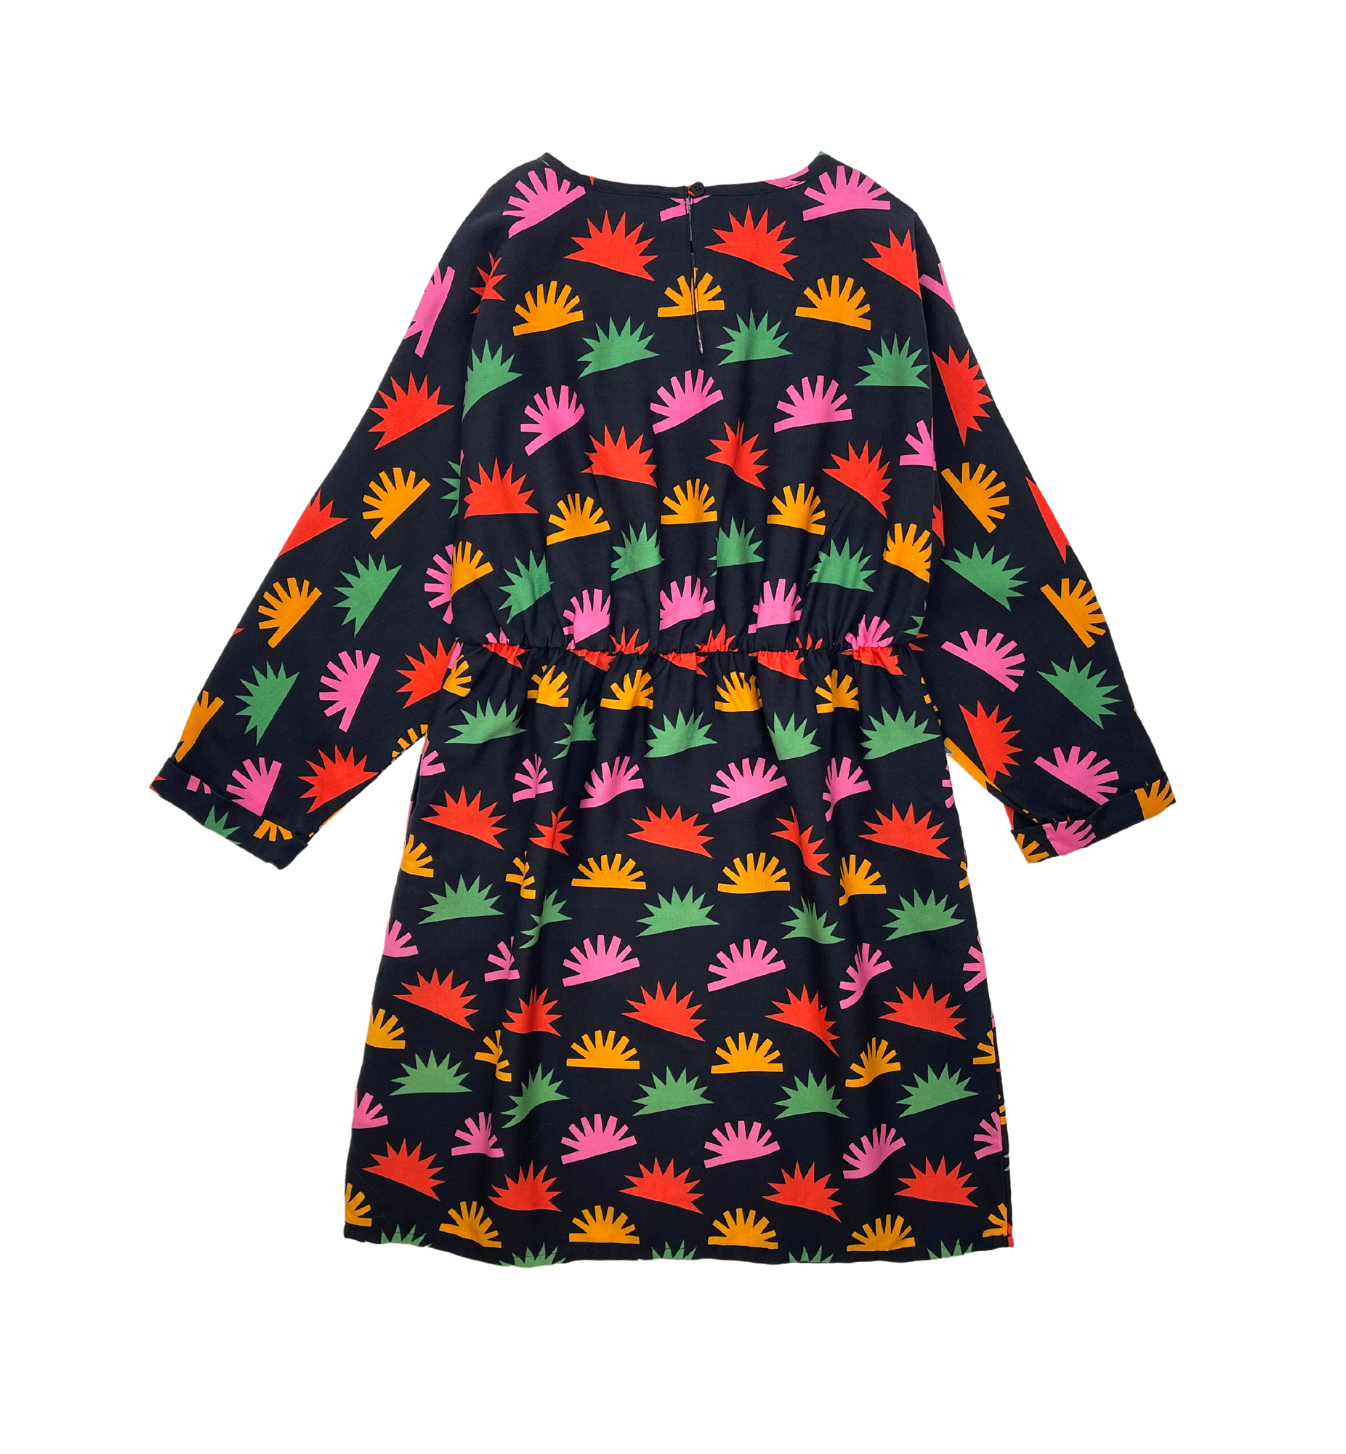 STELLA MCCARTNEY - Robe noire à motifs multicolor - 8 ans